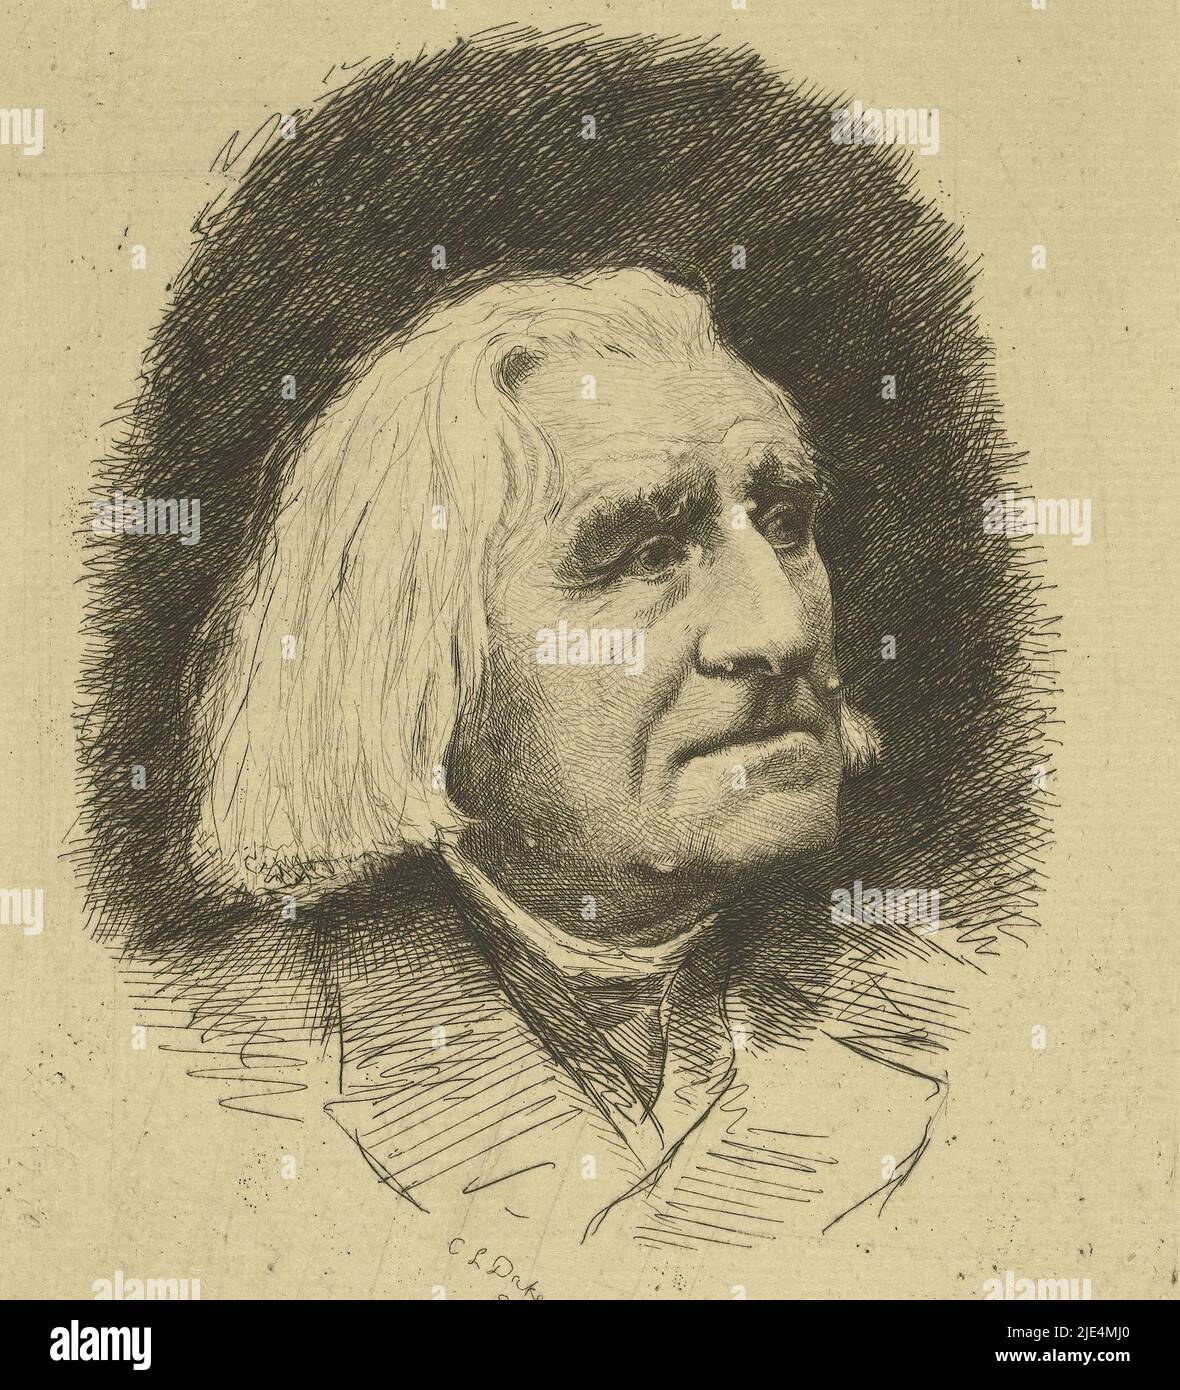 Portrait du compositeur Franz Liszt, Carel Lodewijk Dake, 1886, imprimerie: Carel Lodewijk Dake, (mentionné sur l'objet), Amsterdam, 1886, papier, gravure, h 200 mm - l 139 mm Banque D'Images